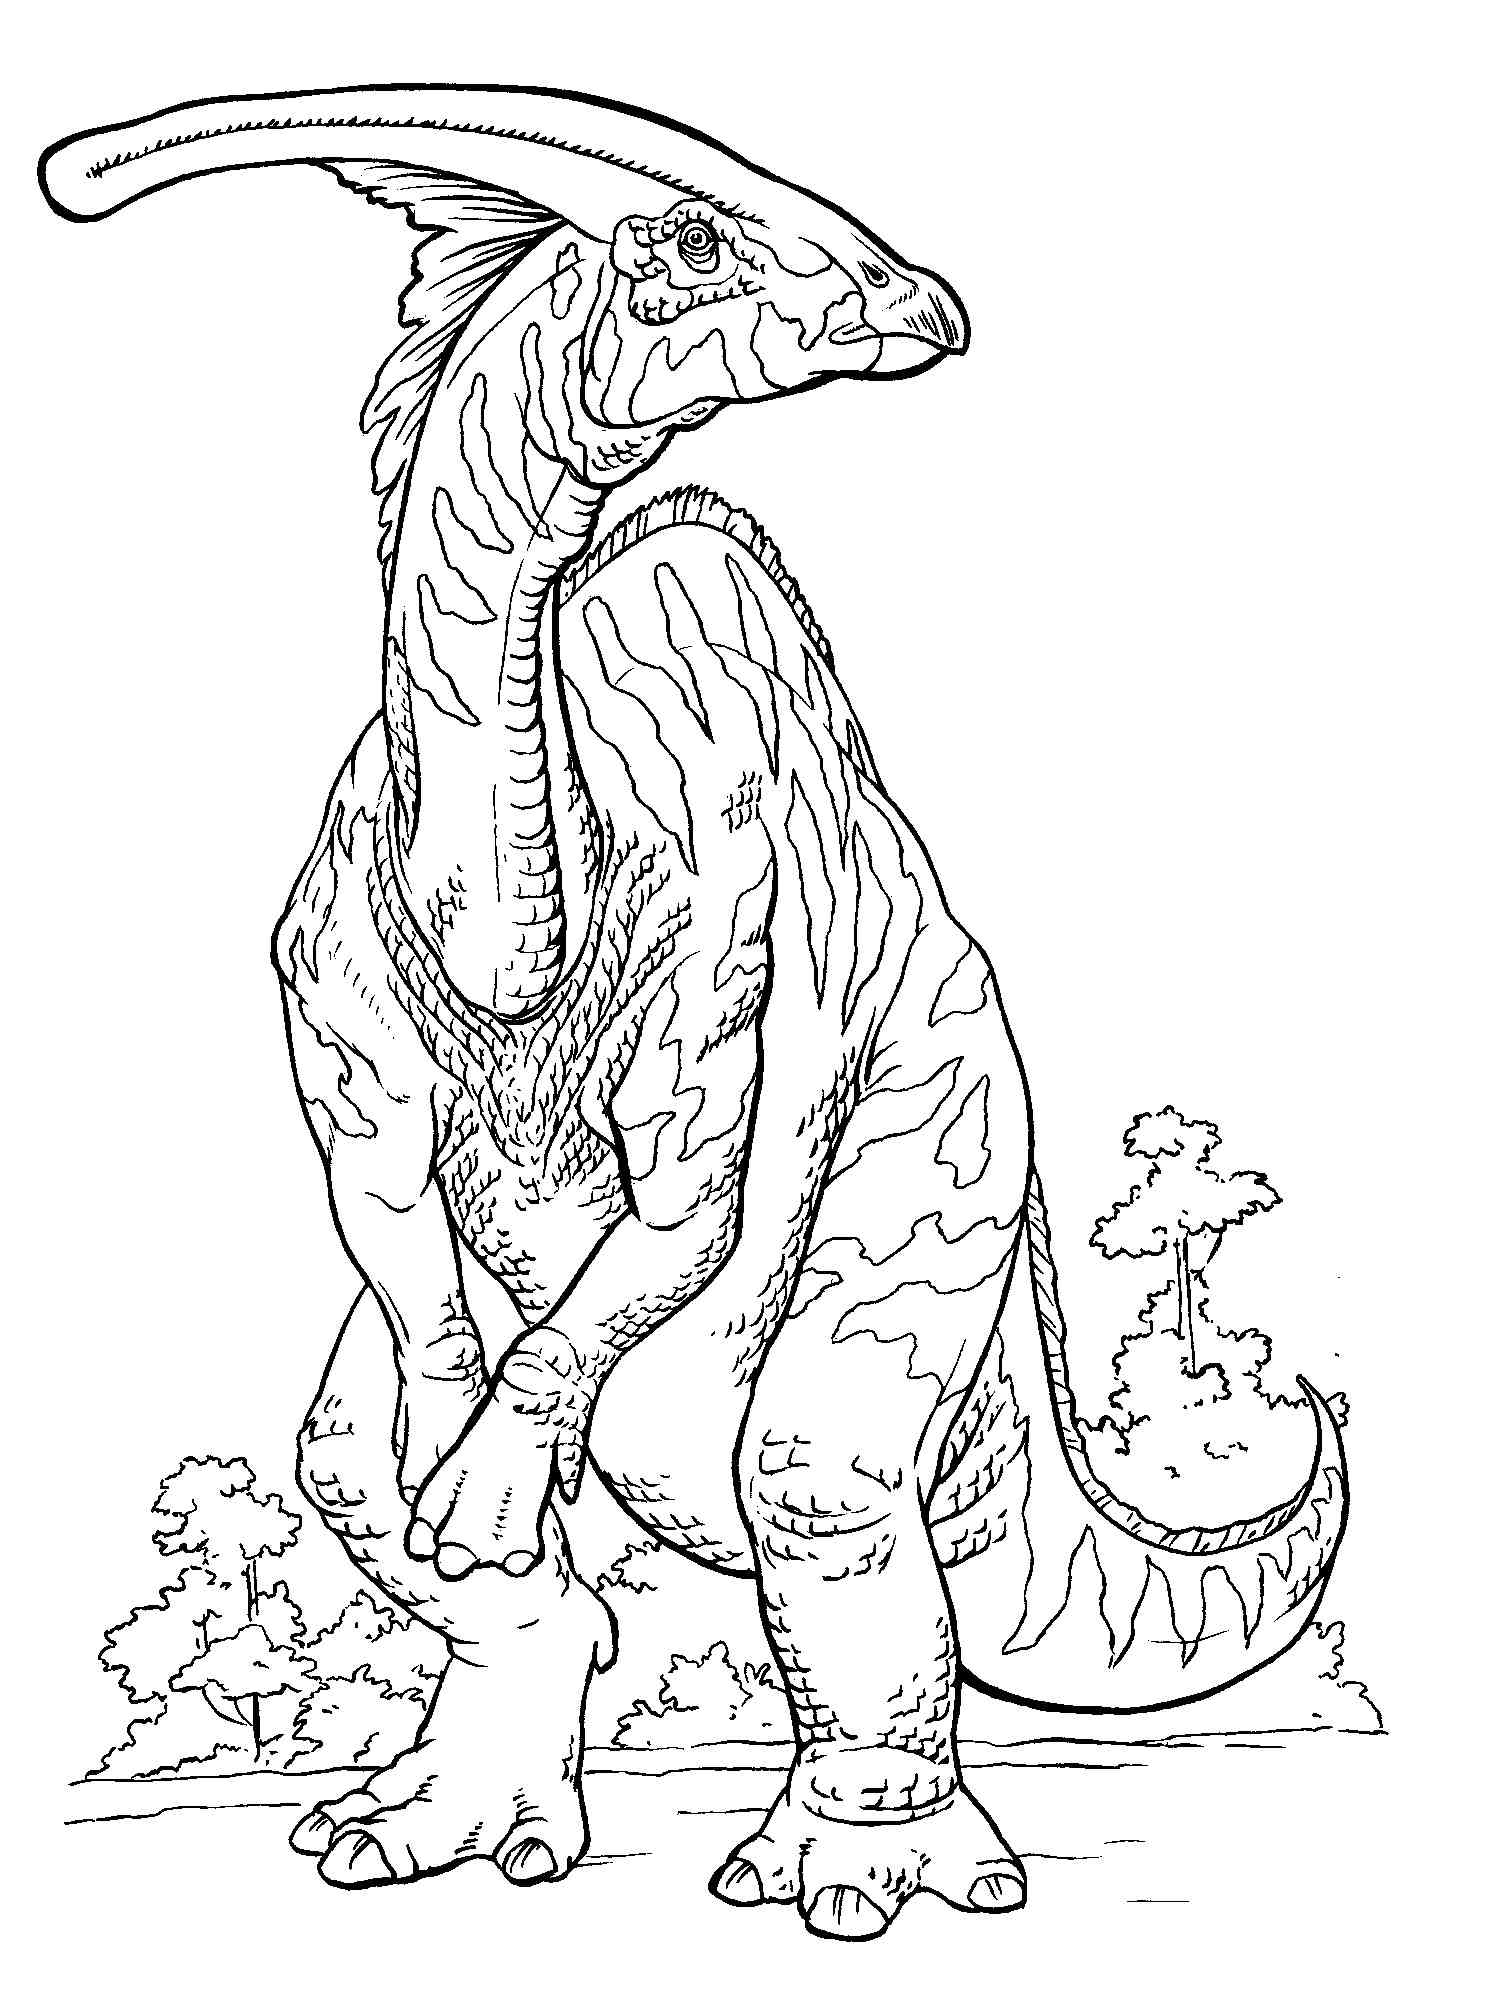 Jurasic Parasaurolophus coloring page